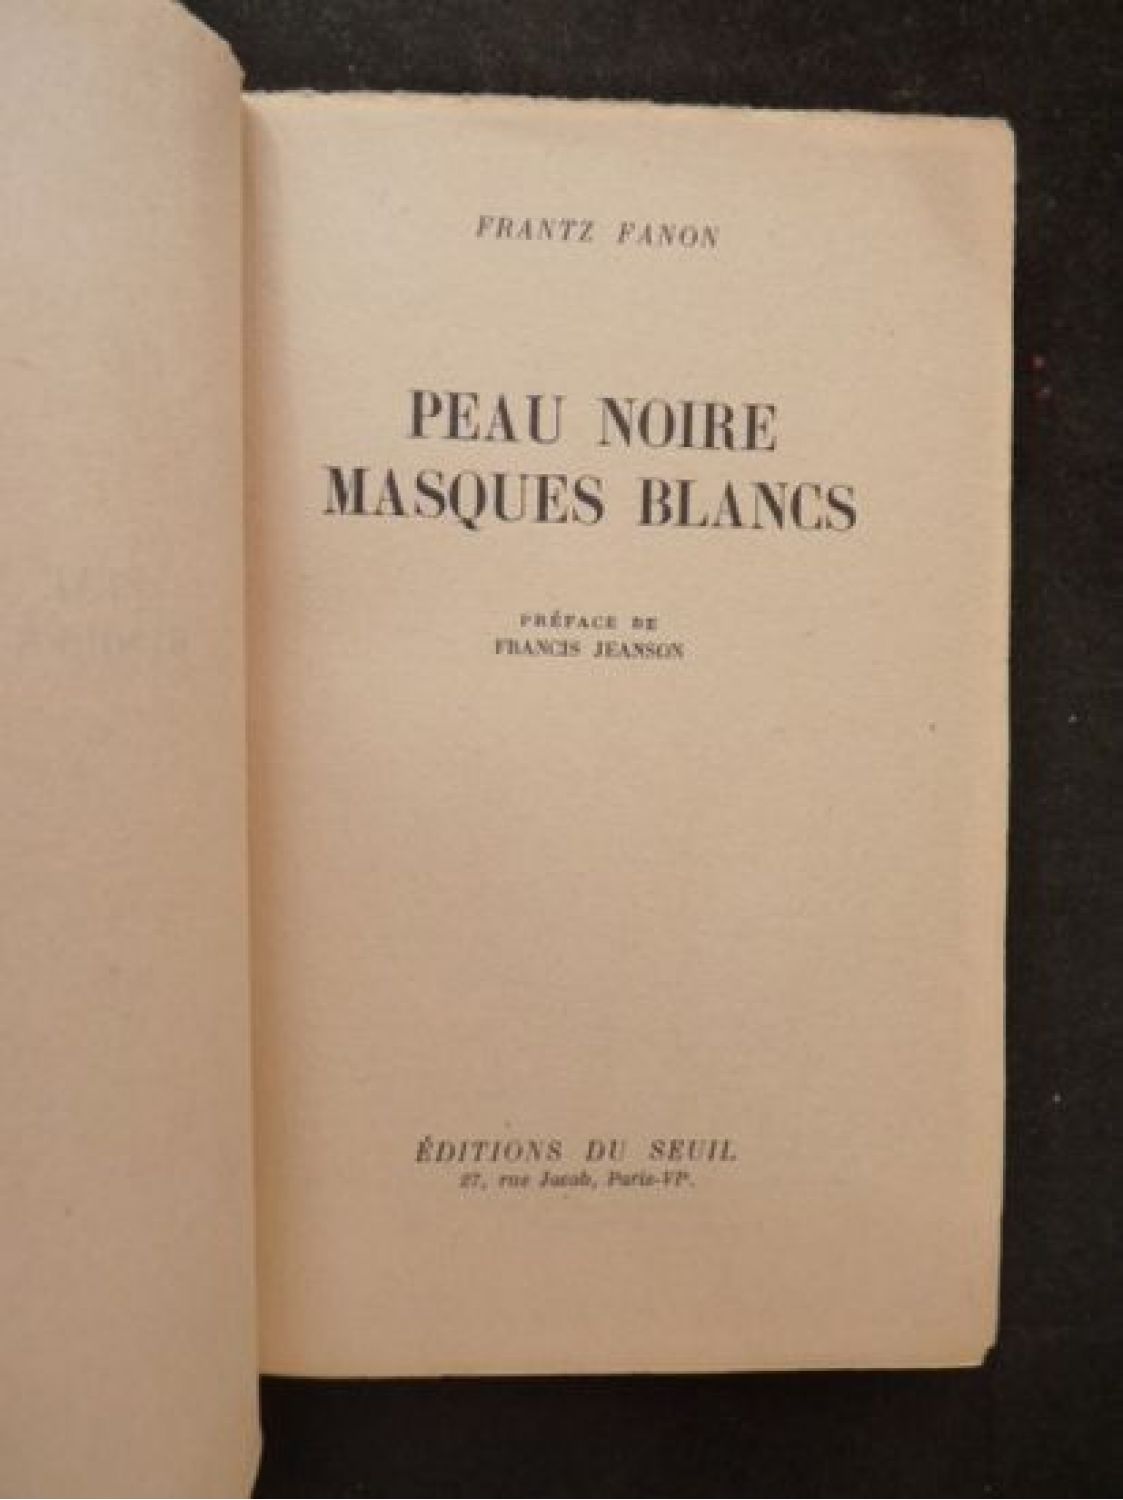 Frantz Fanon, Peau noire, masques blancs. (1952)  Complexe d'infériorité, Masque  blanc, Peau noire